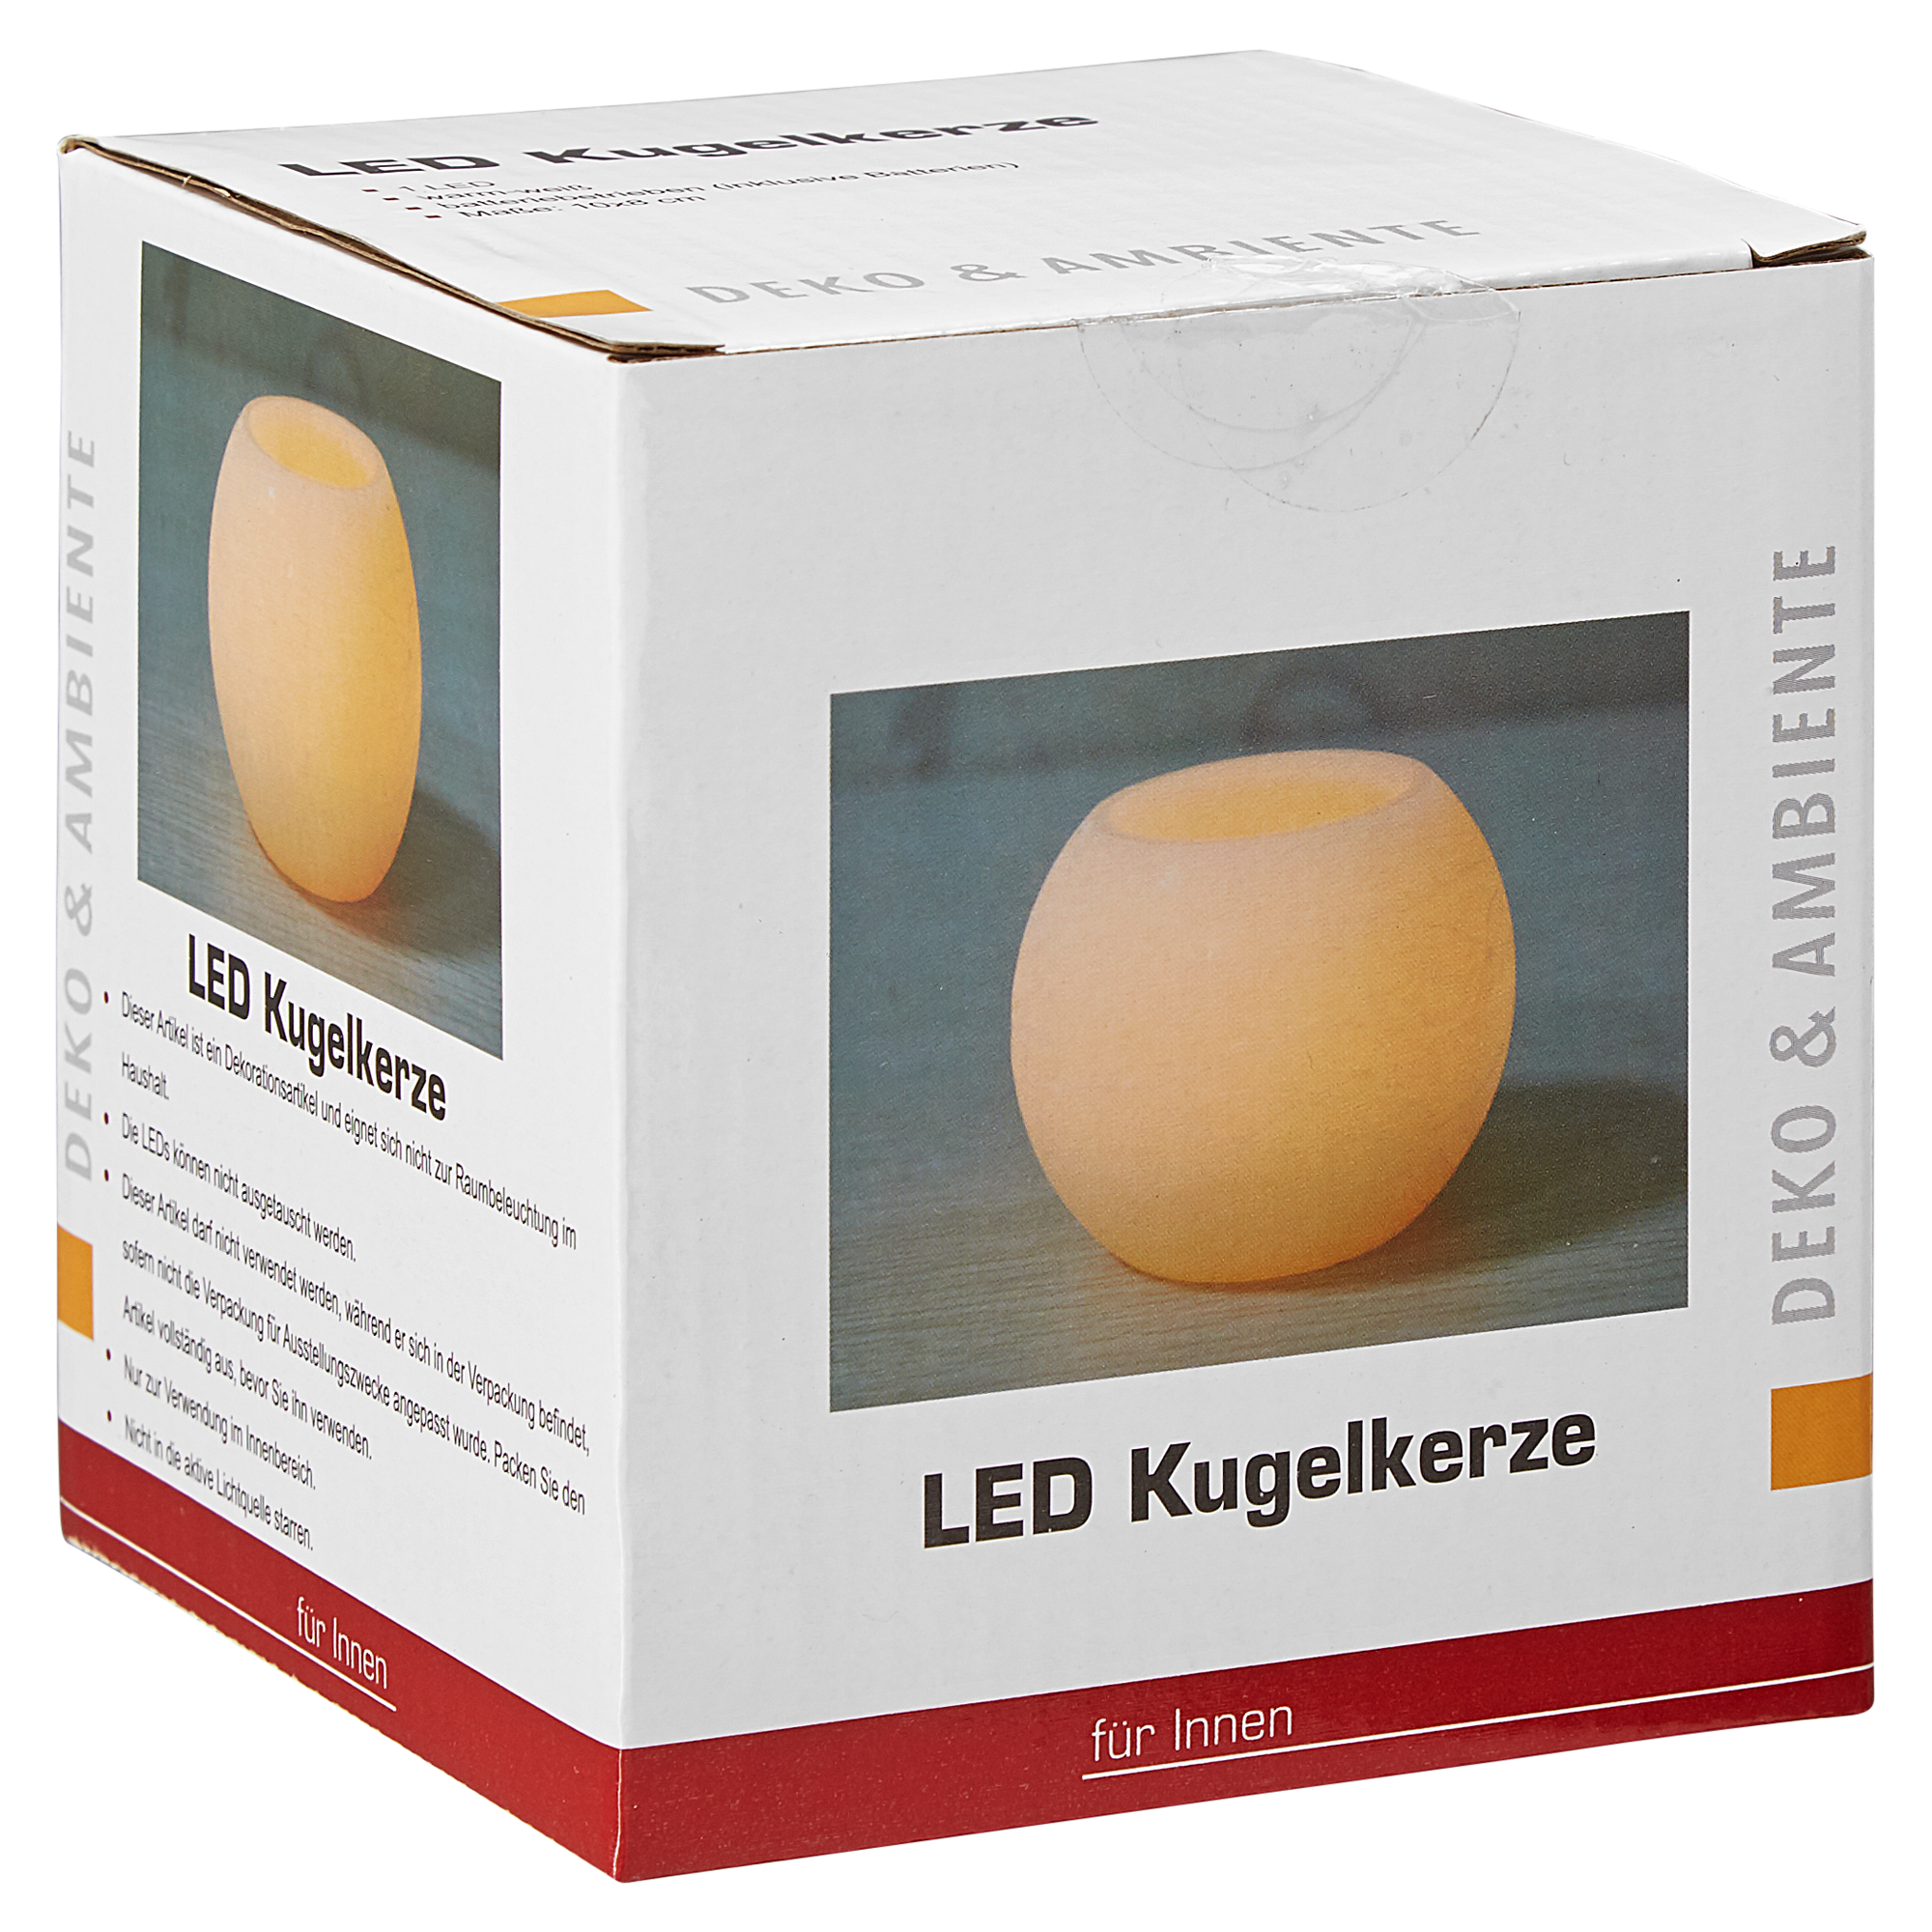 LED-Kugelkerze cremefarben Ø 10 x 8 cm + product picture